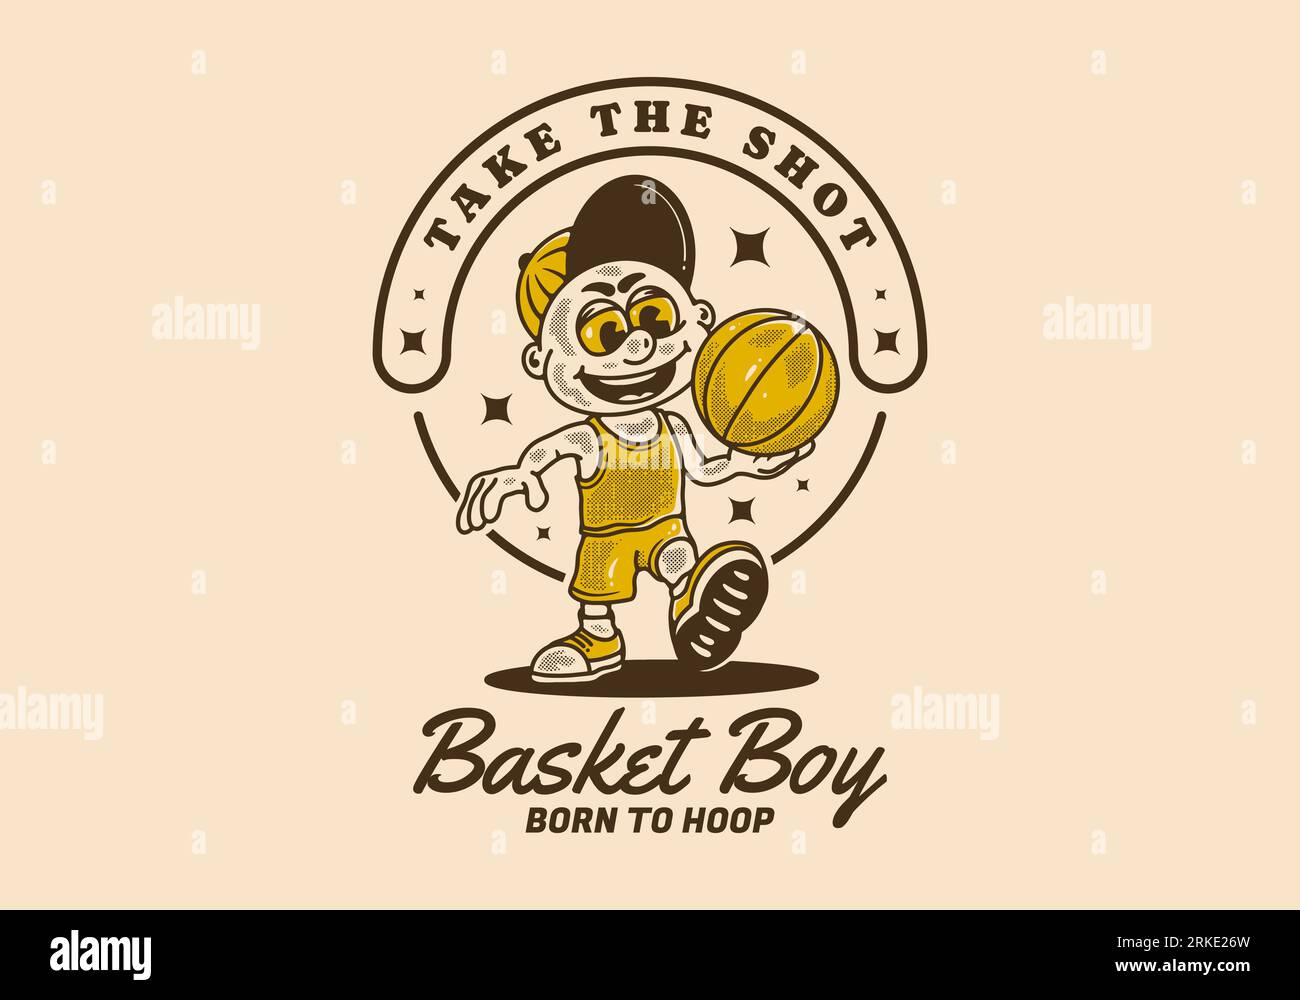 Cestino ragazzo, scatta il colpo, illustrazione vintage personaggio di un ragazzo che tiene una palla da basket Illustrazione Vettoriale